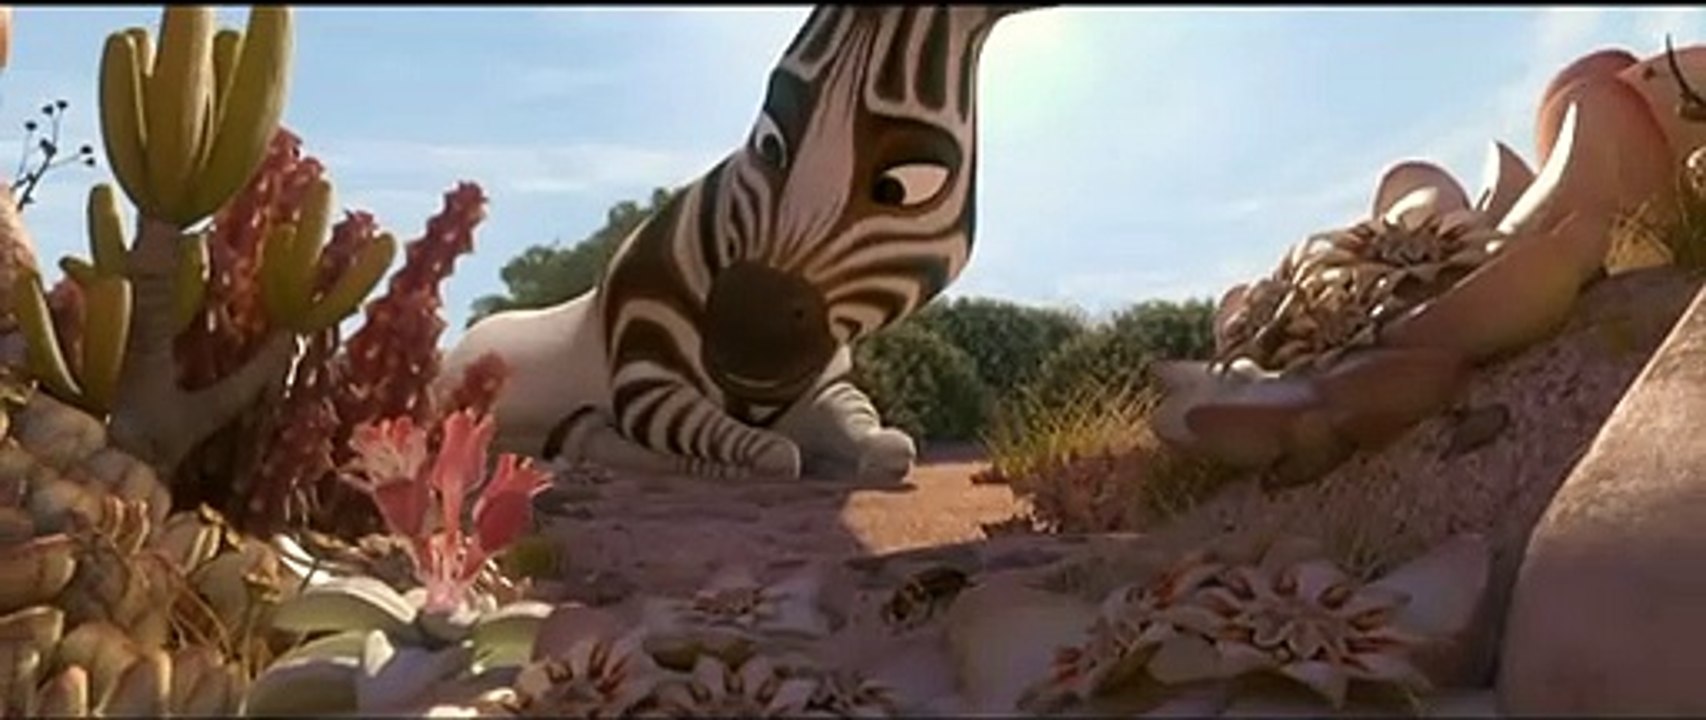 Khumba Das Zebra ohne Streifen am Popo Film